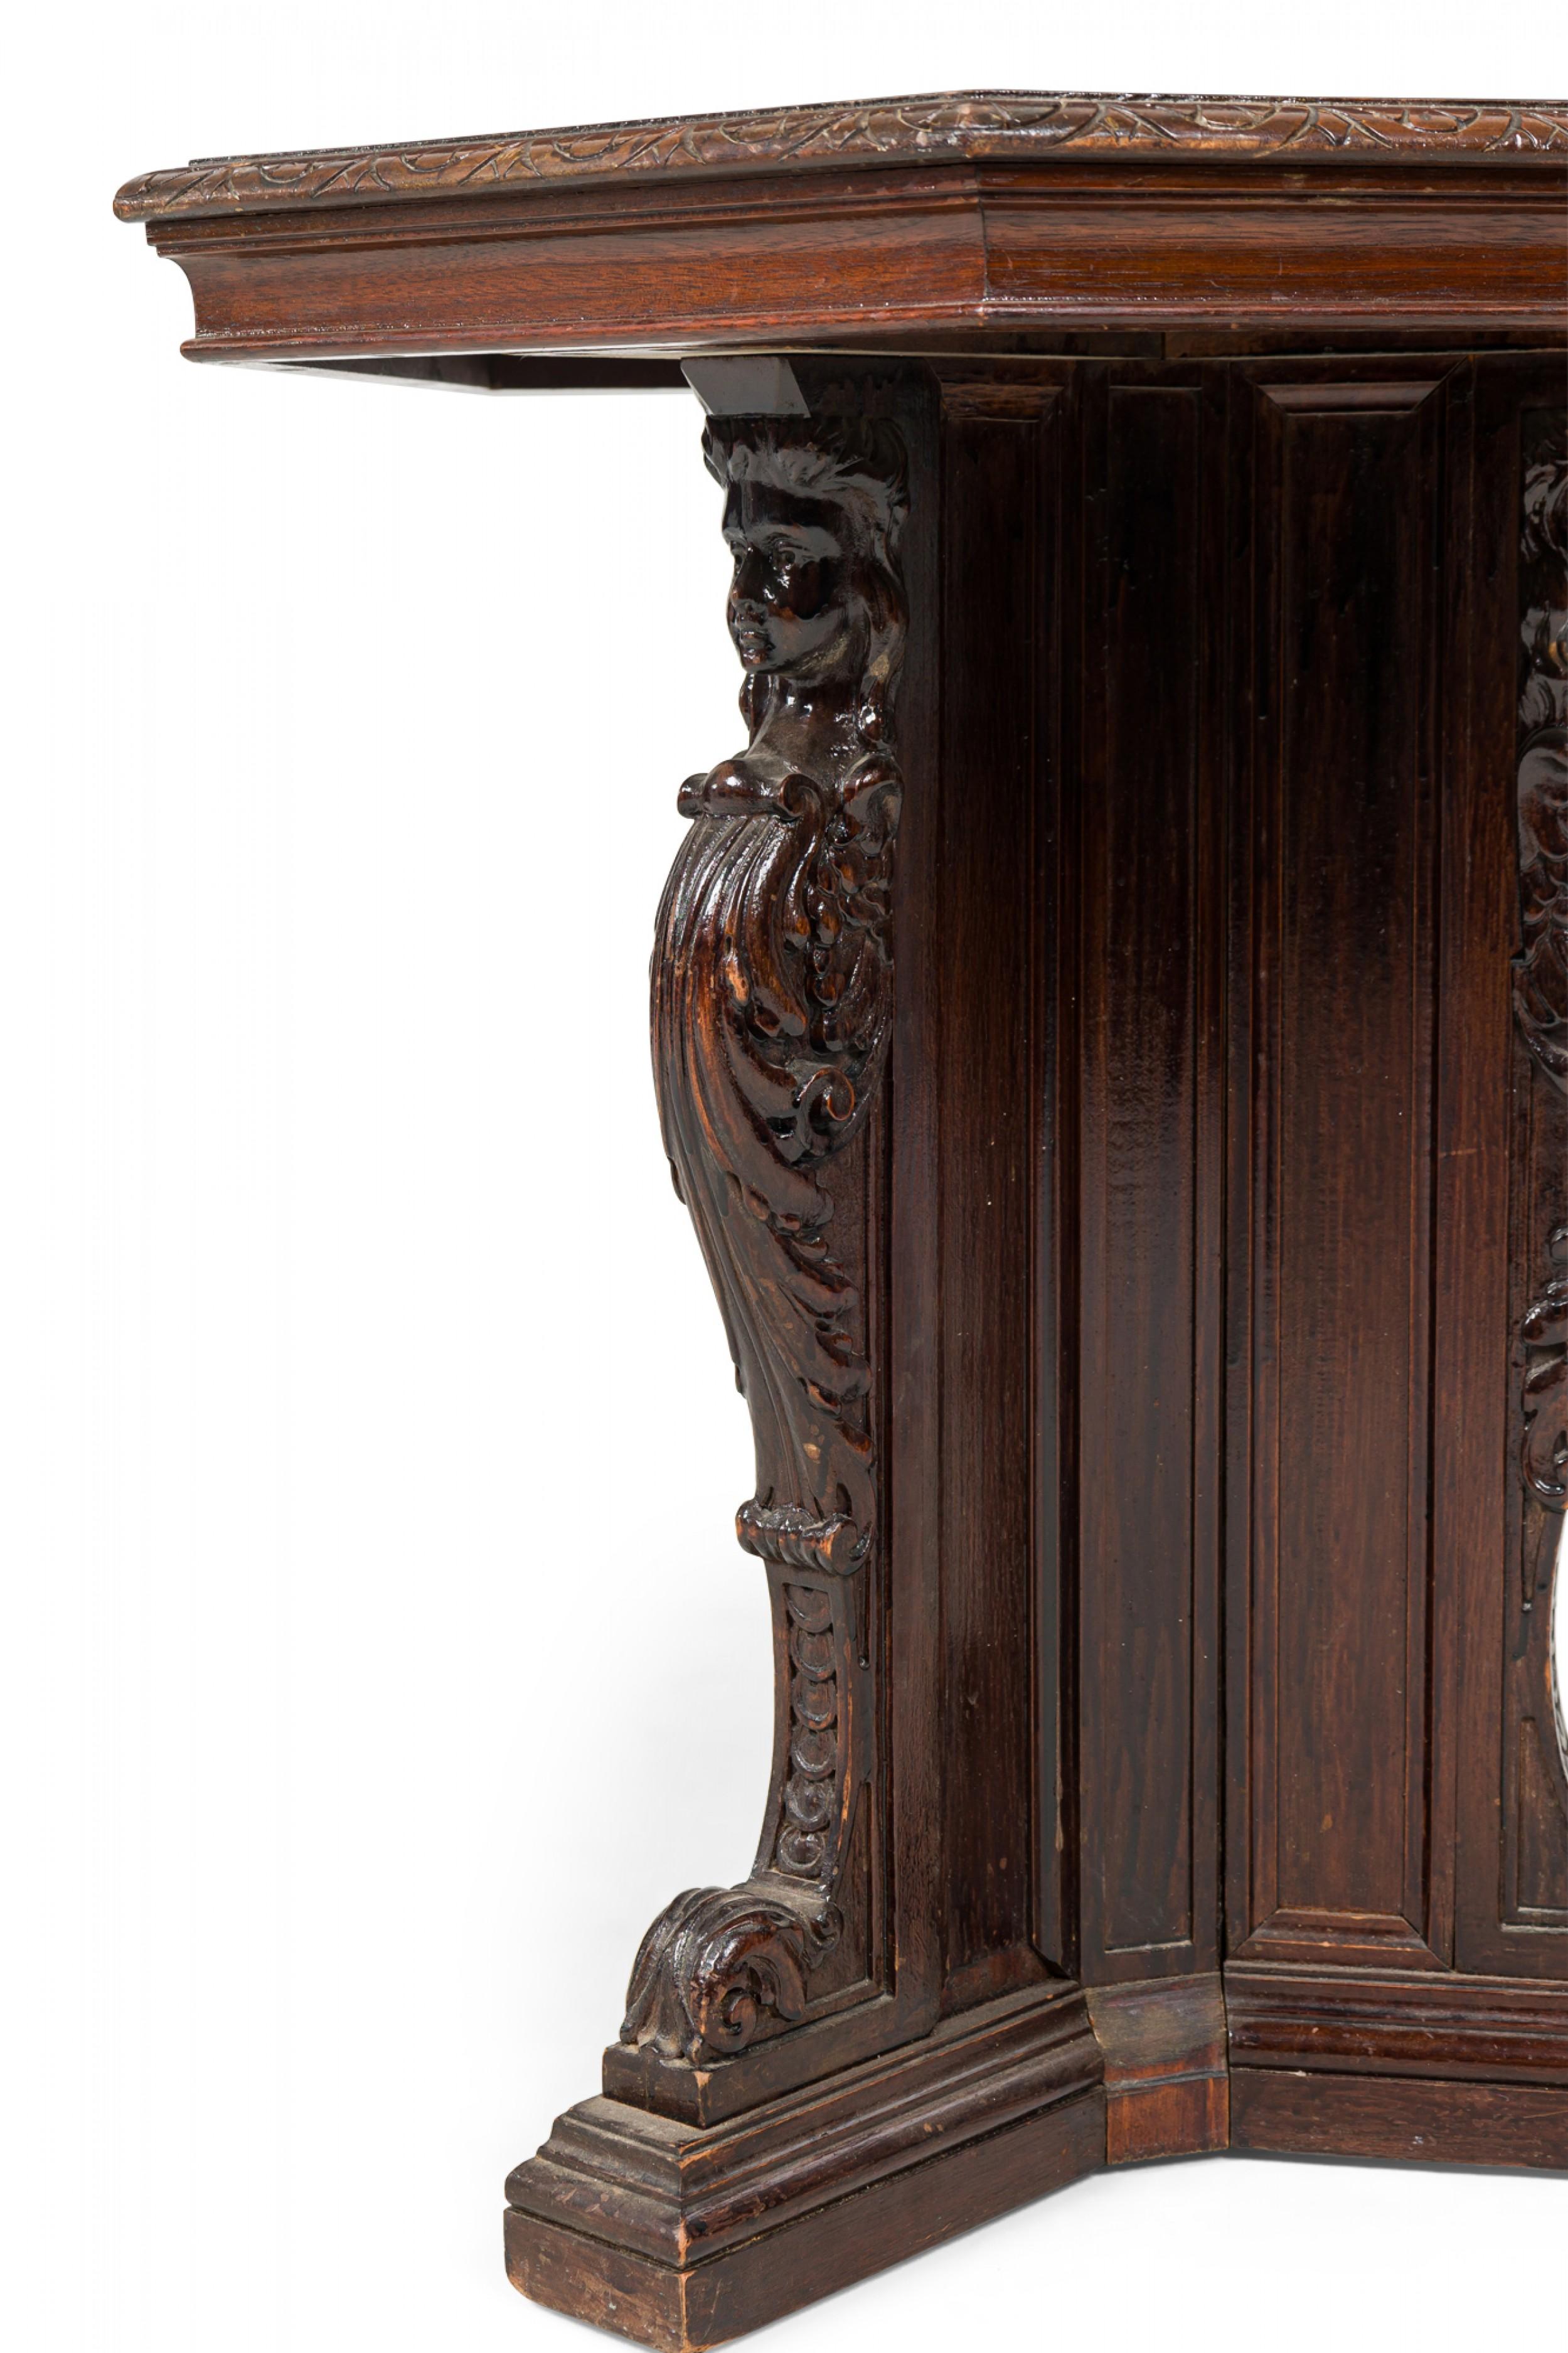 Table d'appoint / d'extrémité hexagonale de style victorien anglais avec des bords sculptés, reposant sur une base piédestale à quatre pieds avec une sculpture décorative en forme de volute.